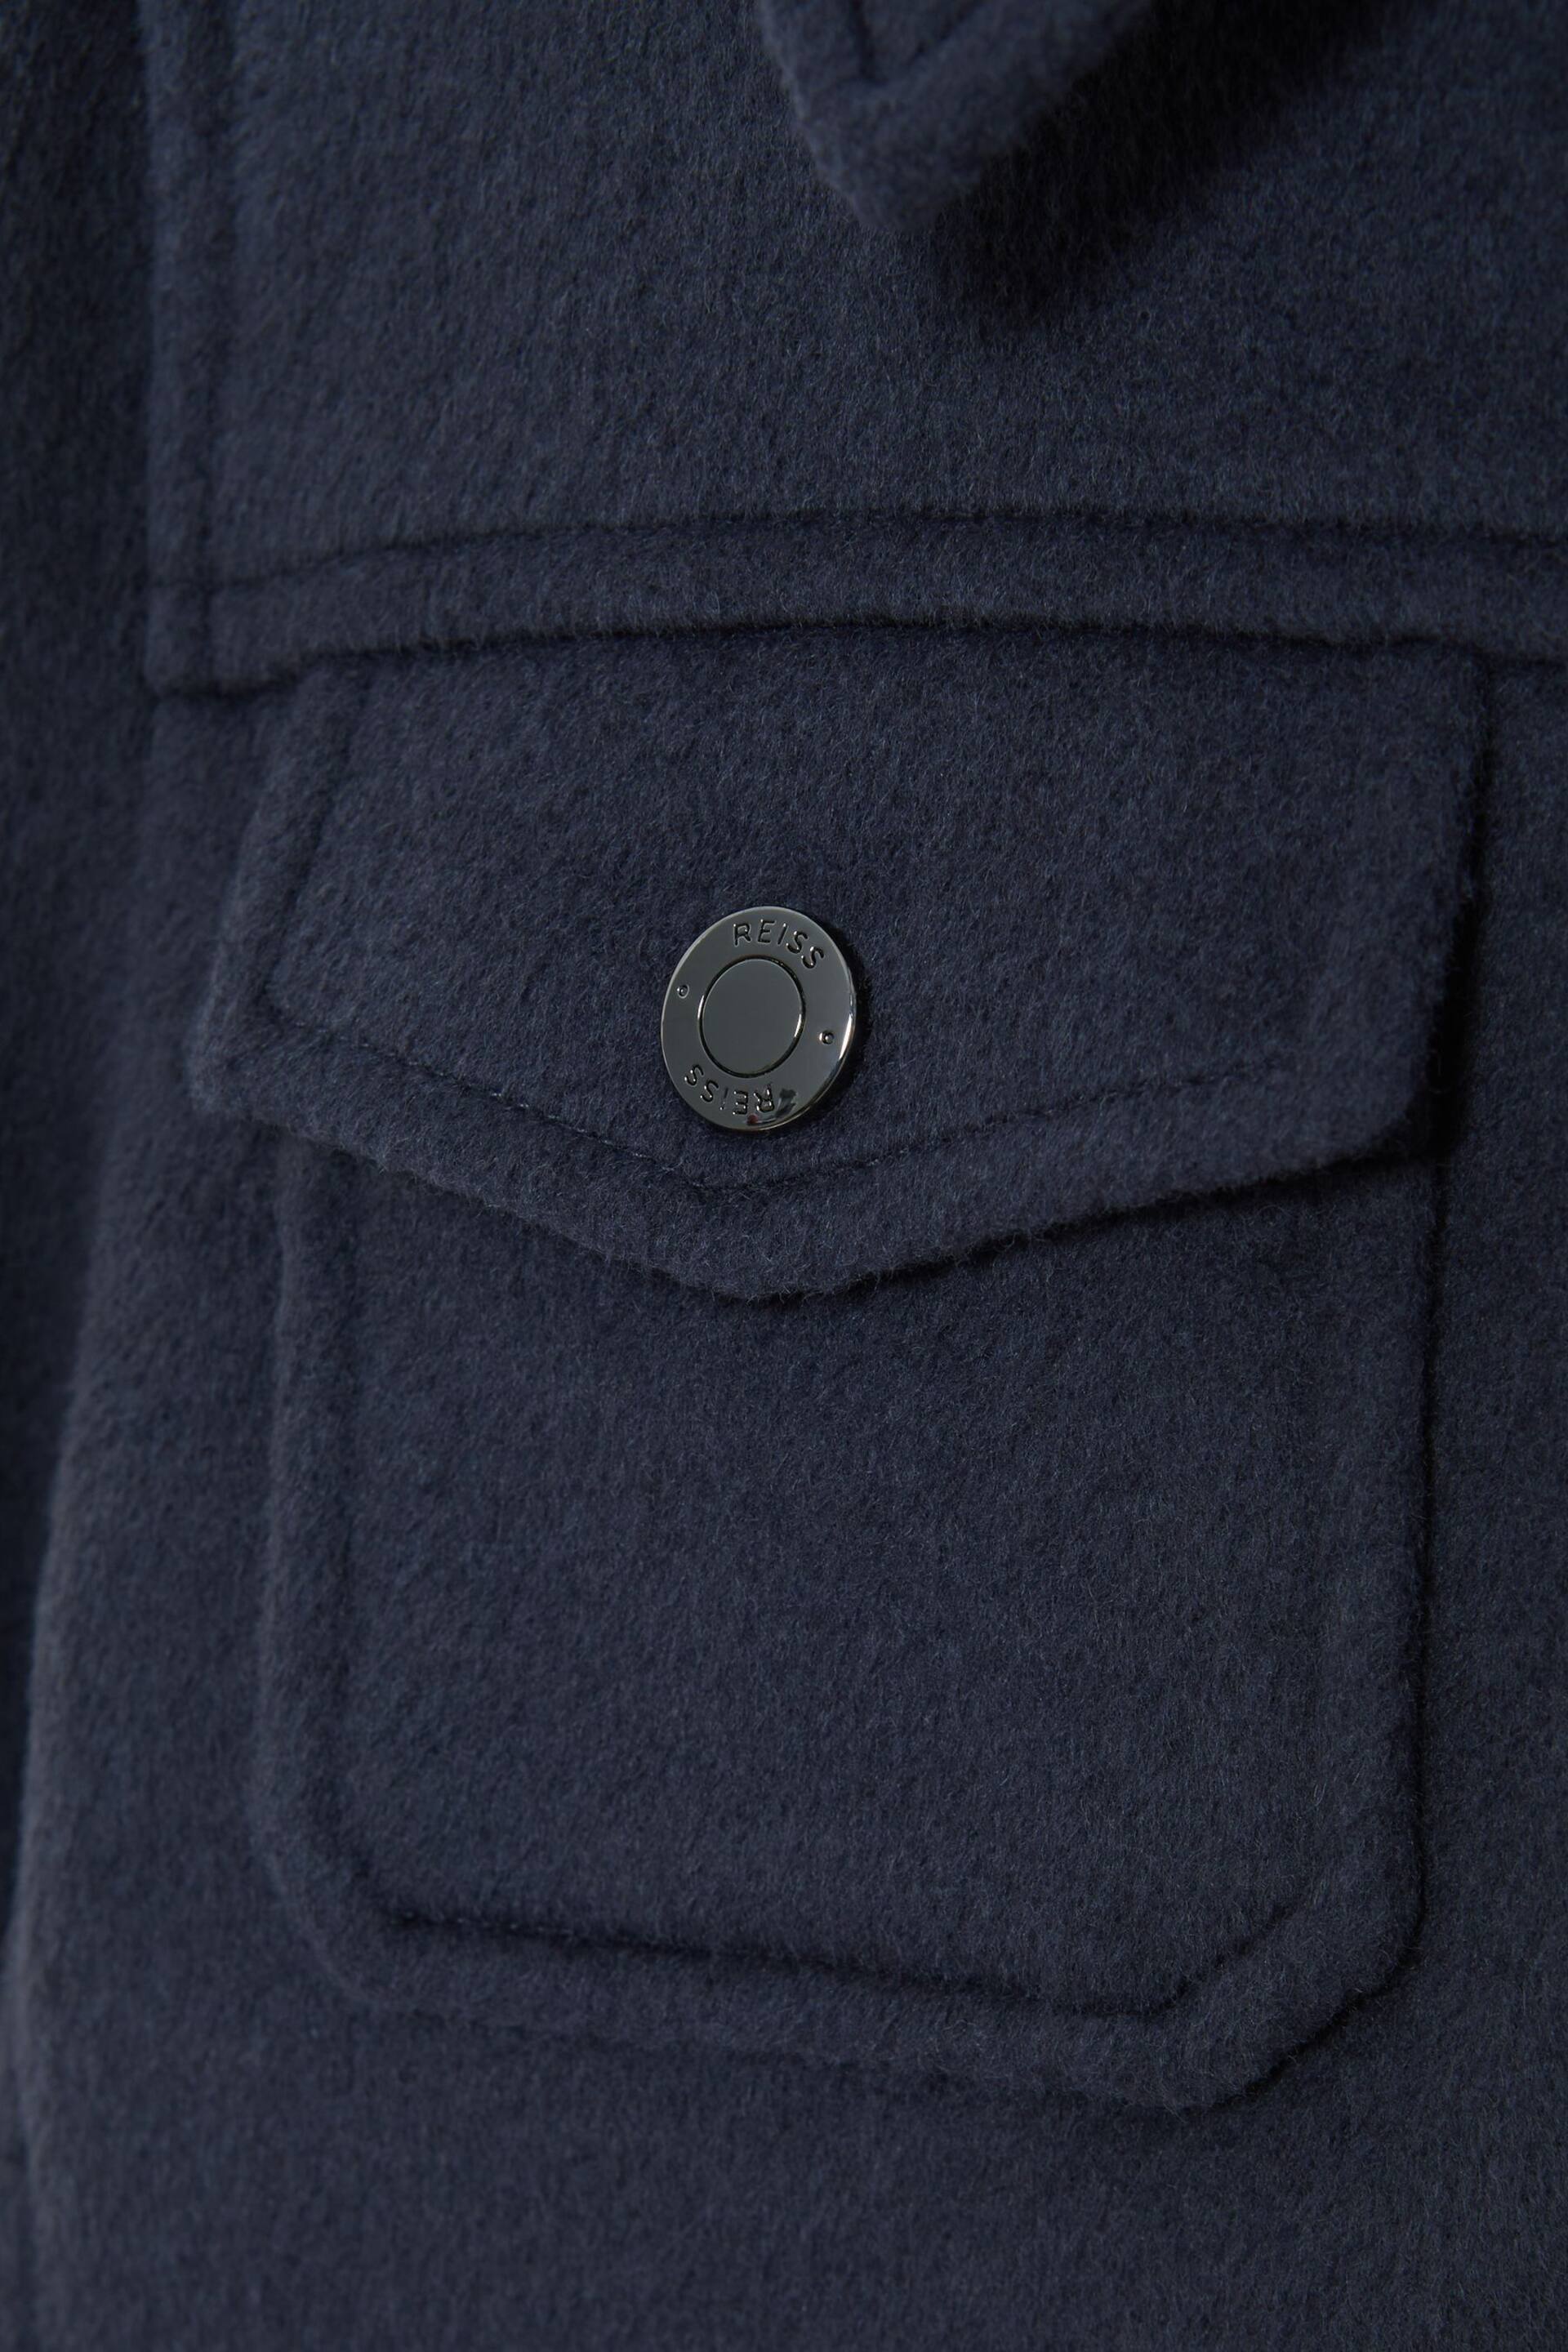 Reiss Airforce Blue Peridoe Senior Wool Trucker Jacket - Image 5 of 5